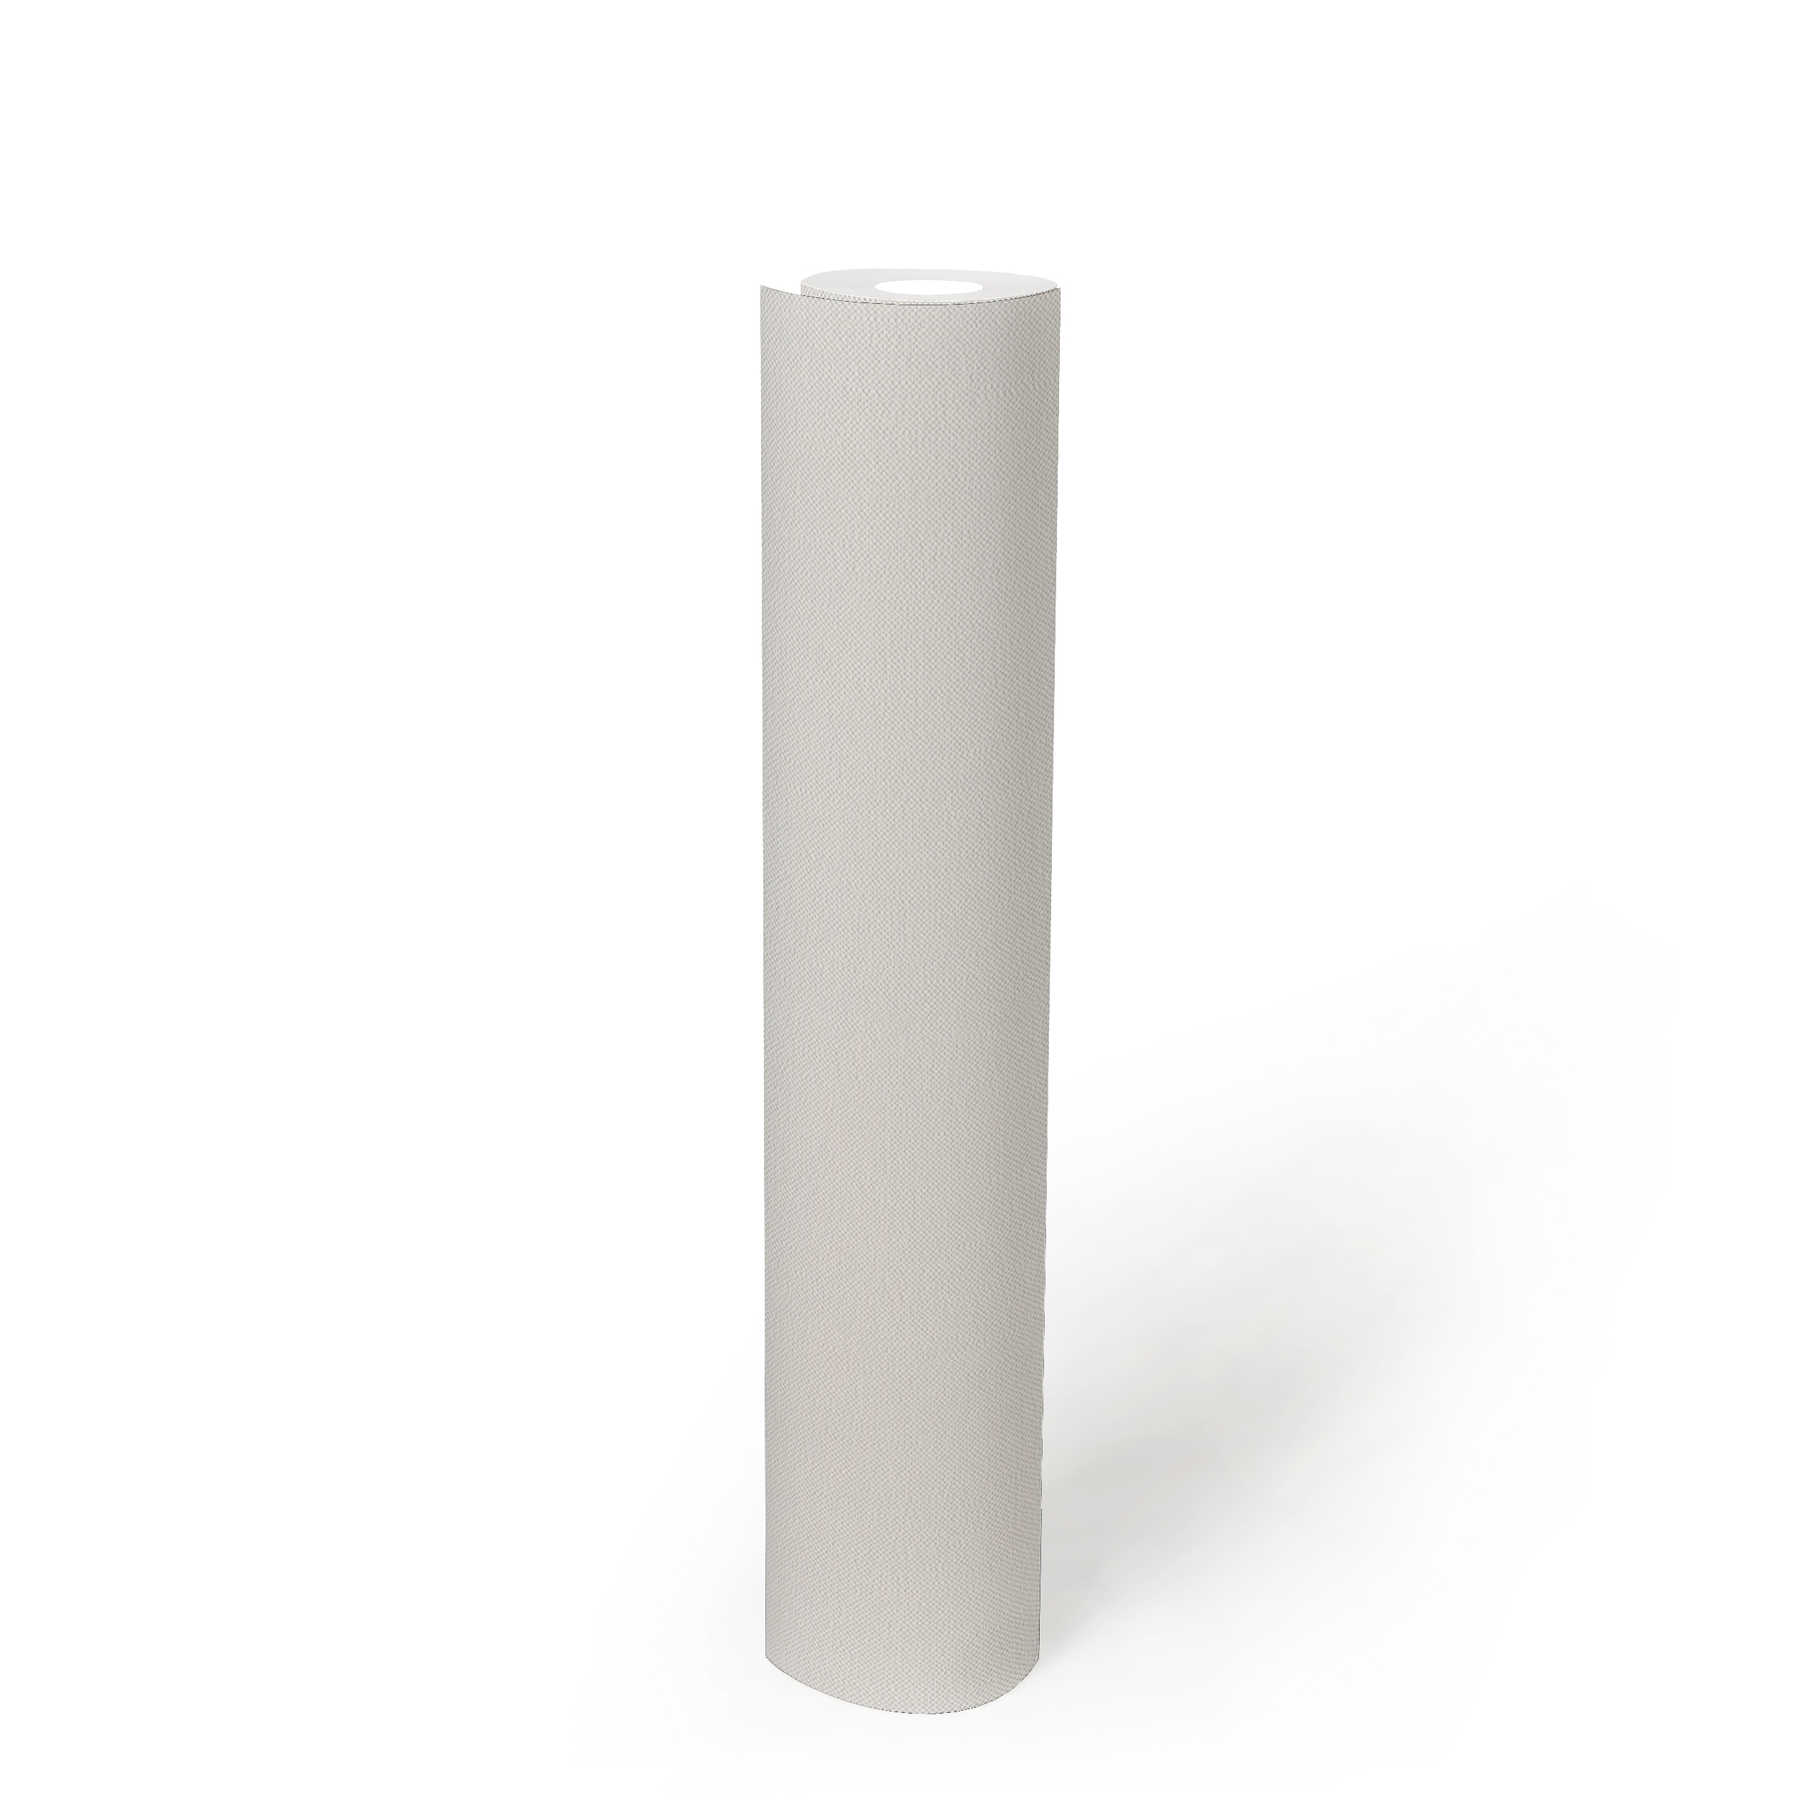             Leinenoptik Tapete Weiß einfarbig mit Strukturdesign
        